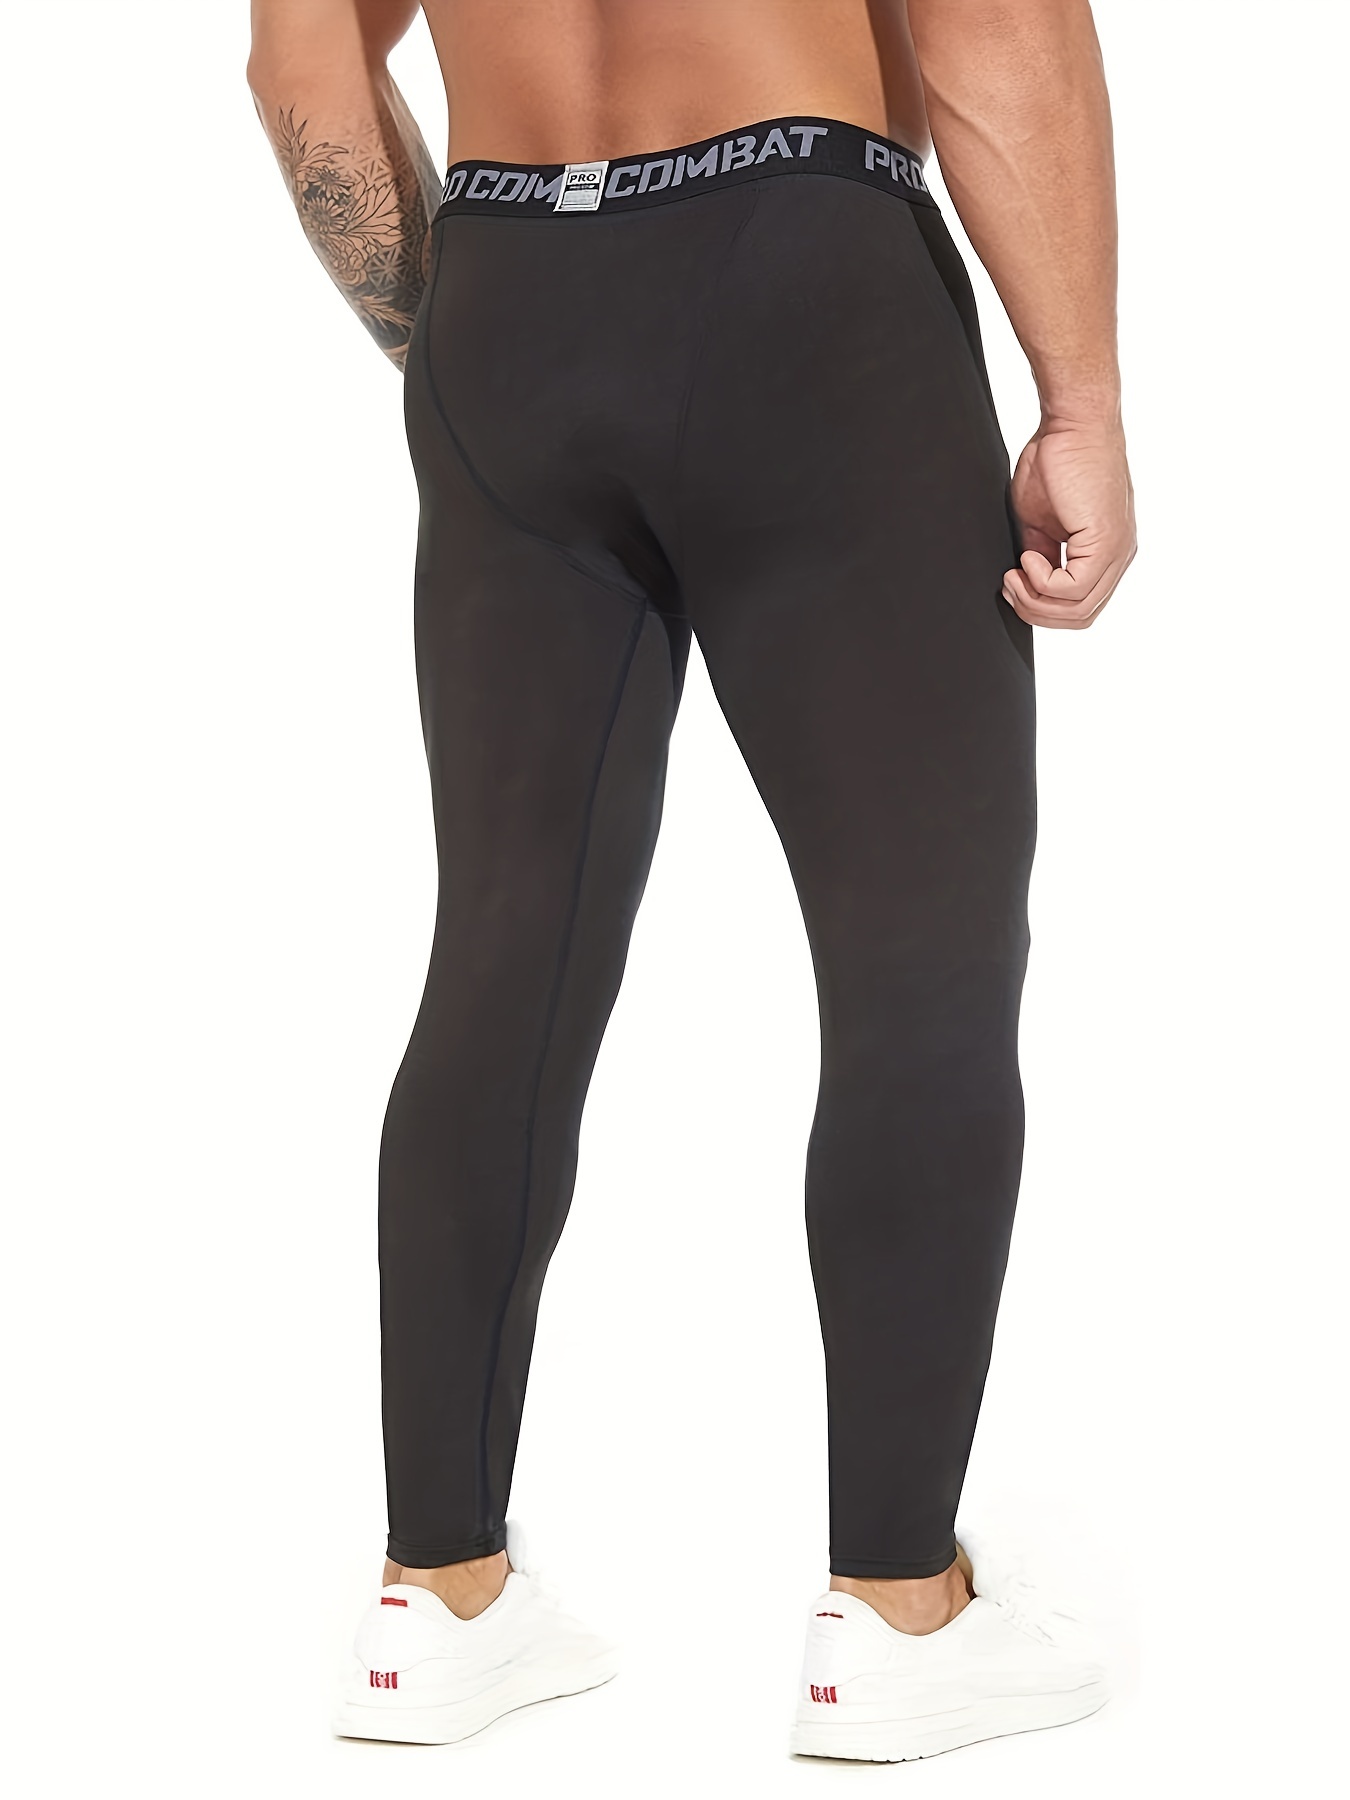 TELALEO Paquete de 6, 5 o 4 pantalones de compresión para hombre, mallas  deportivas, de rendimiento atlético, capa base, entrenamiento, correr